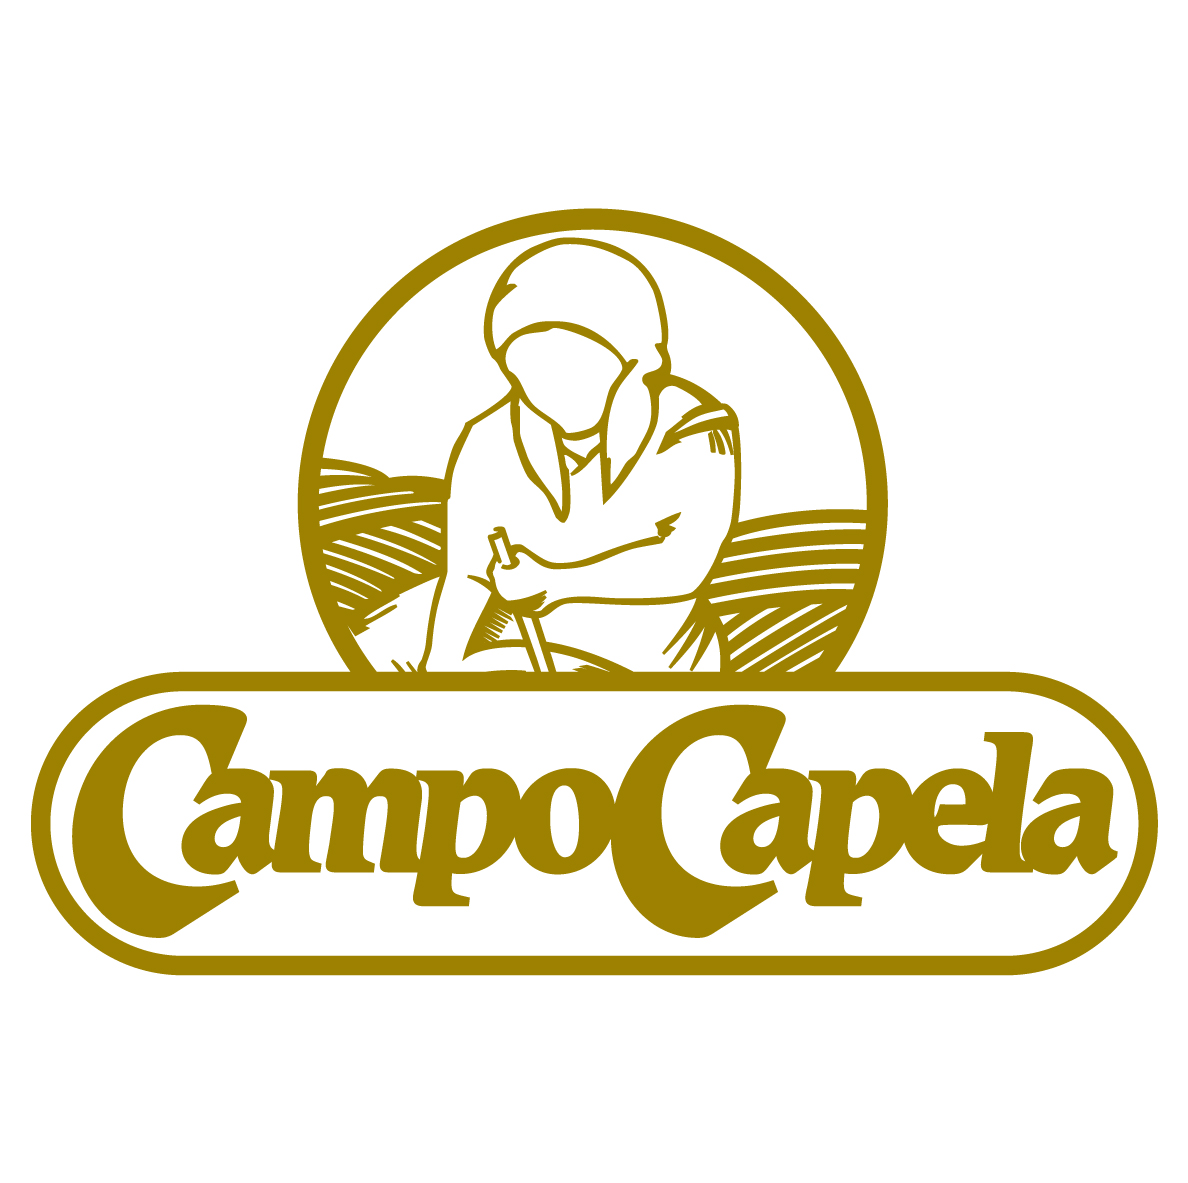 Campo Capela